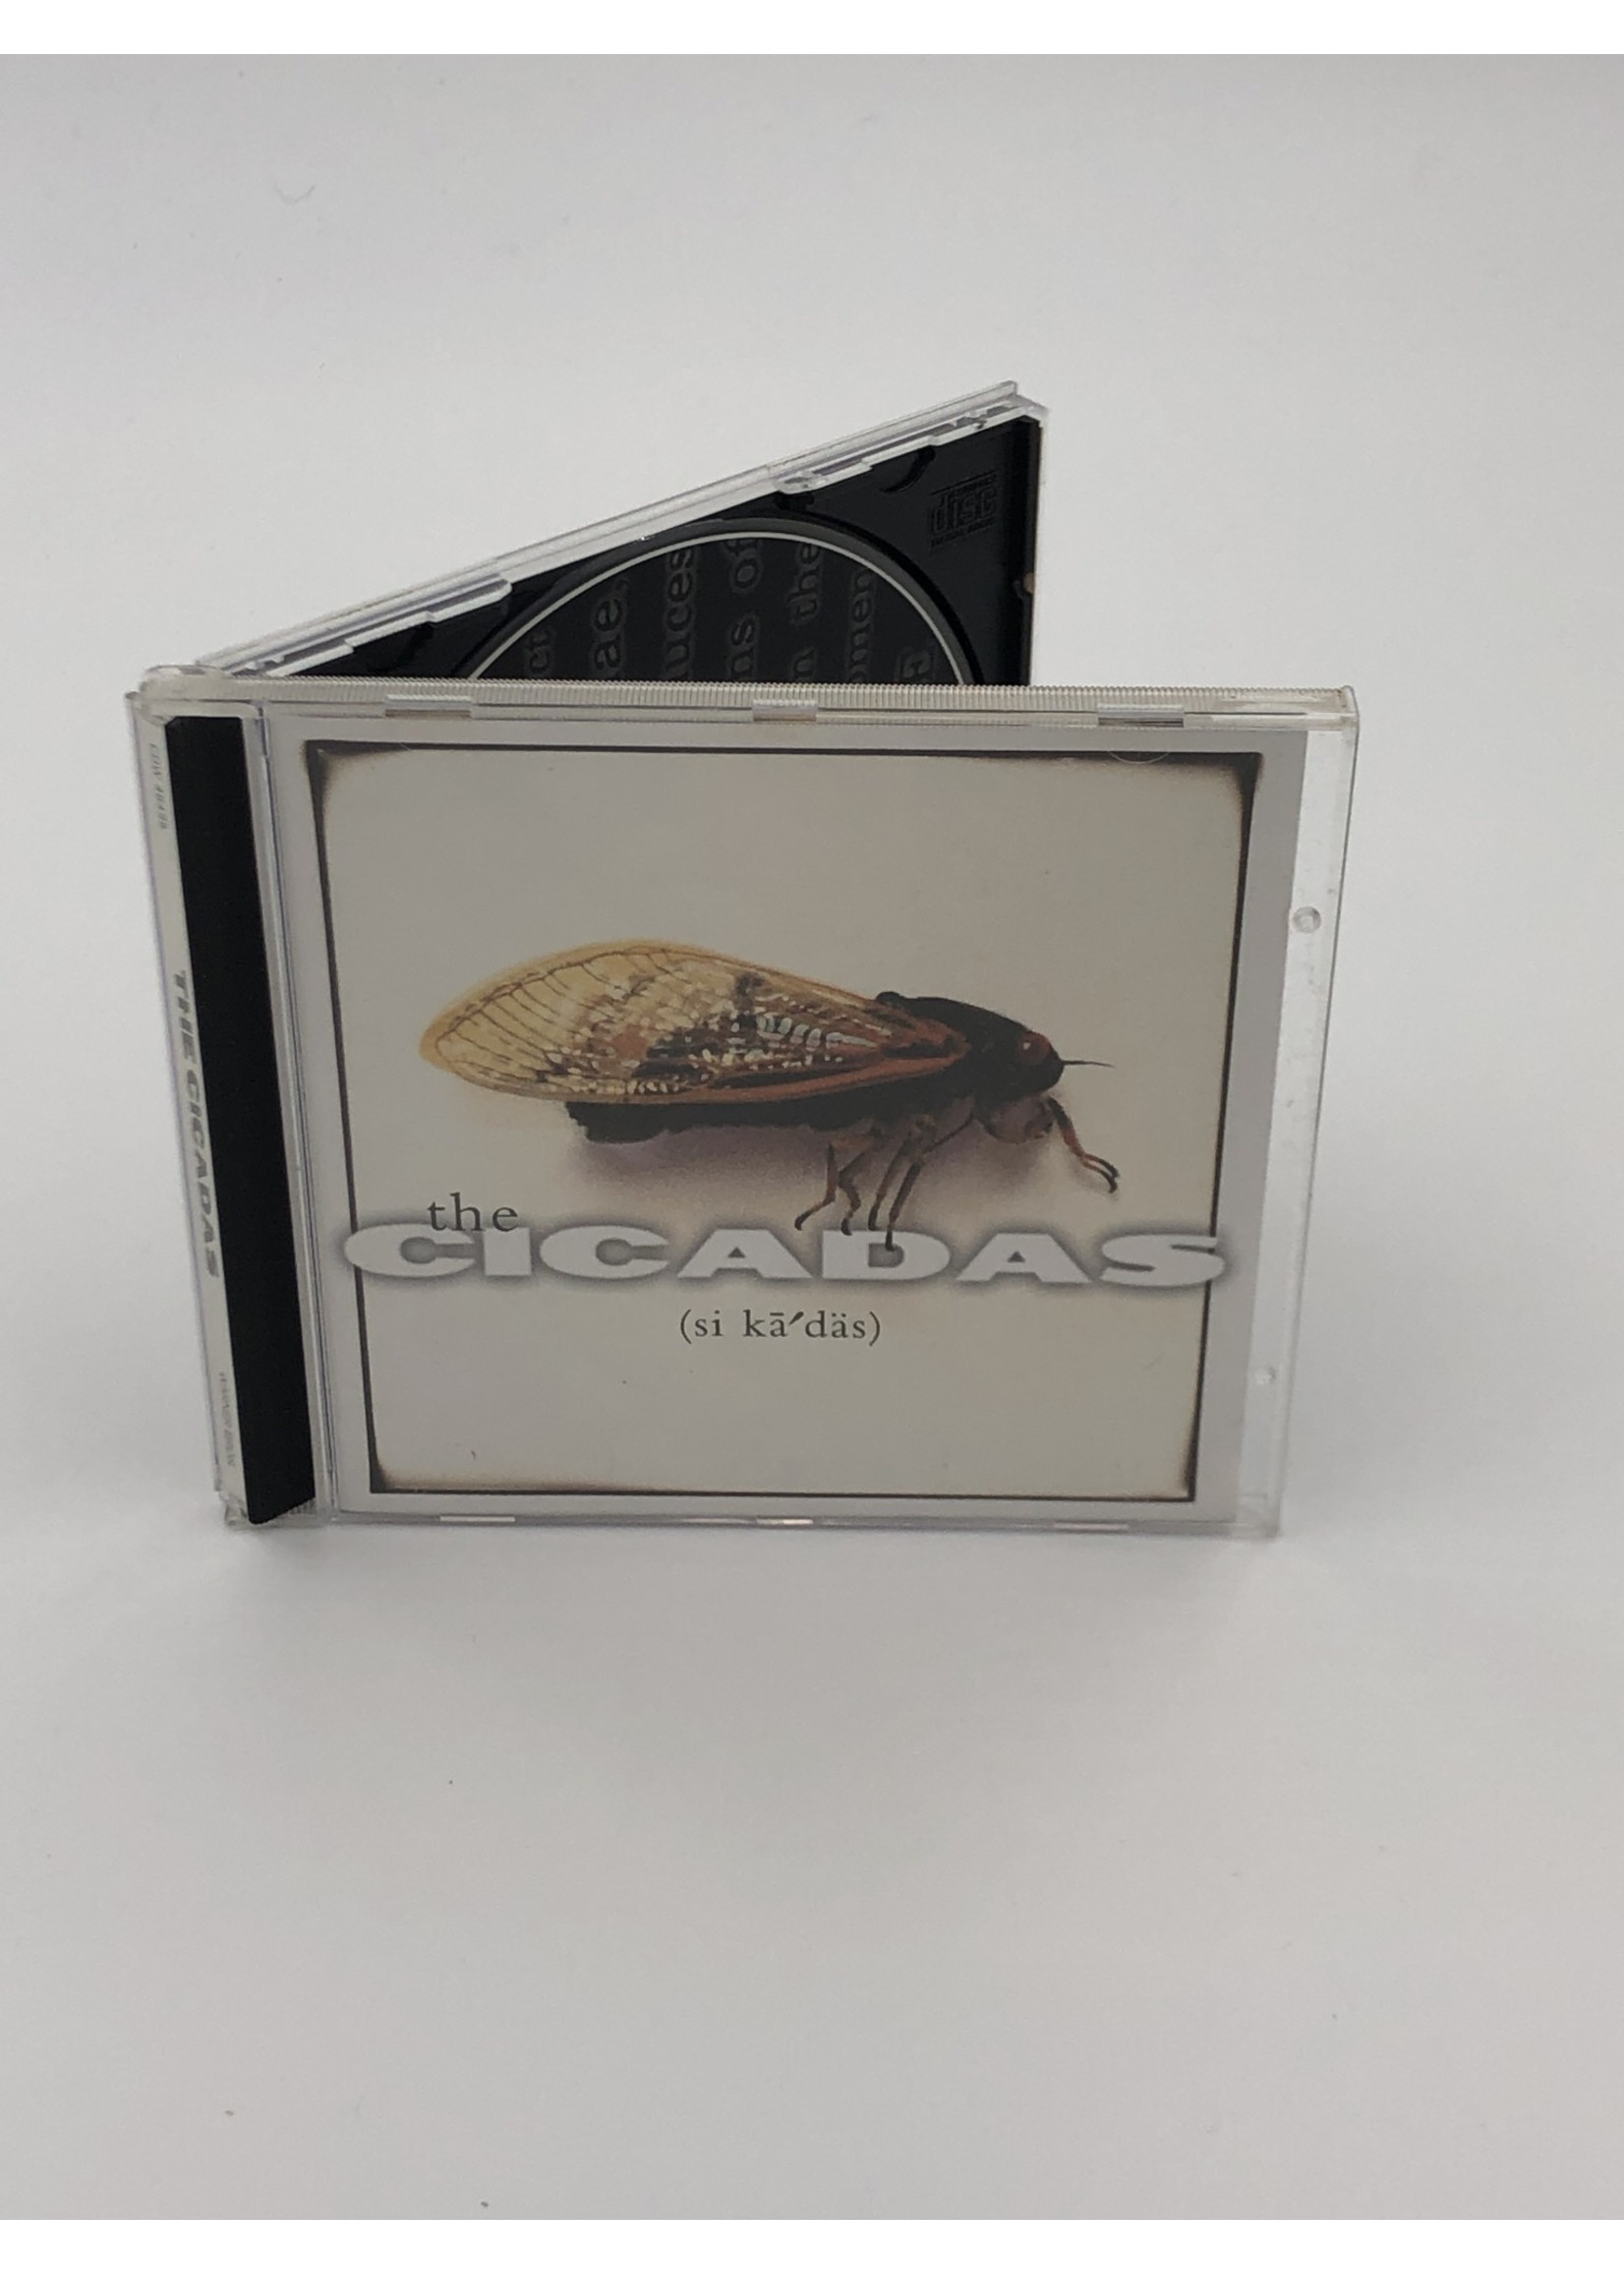 CD The Cicadas: The Cicadas CD